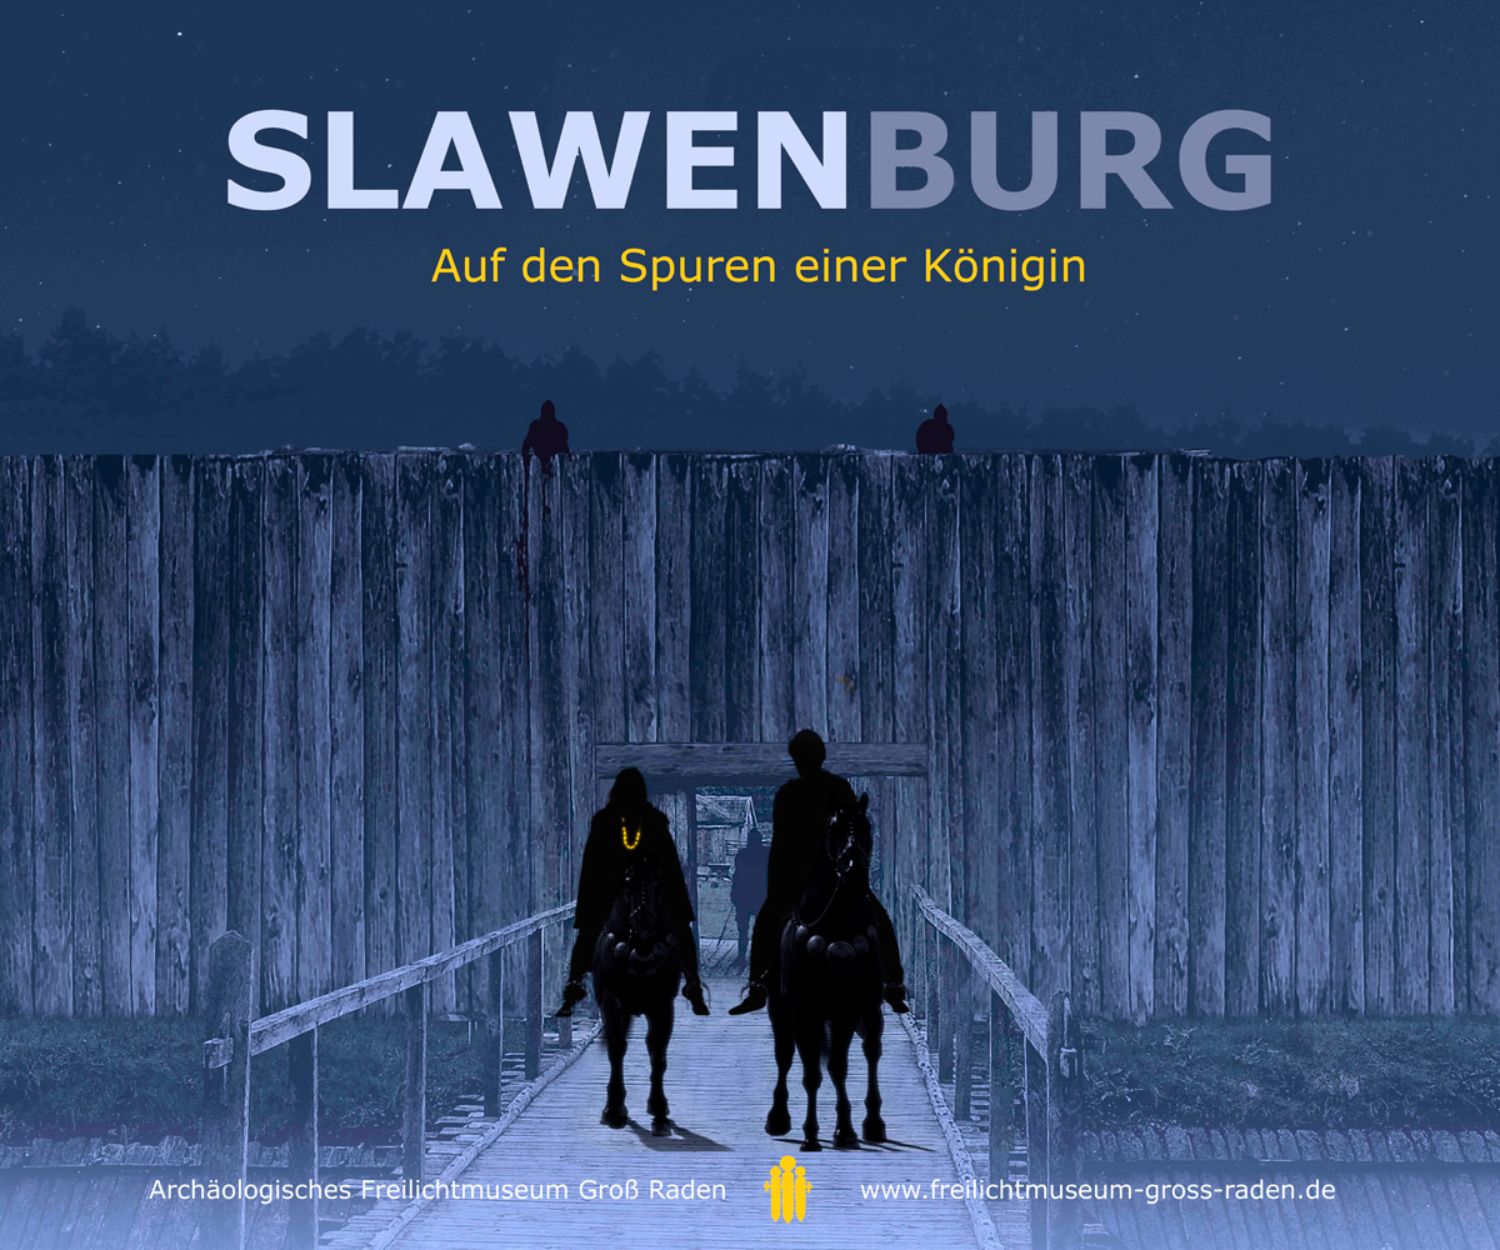 Titel der Sonderausstellung SLAWENBURG – Auf den Spuren einer Königin